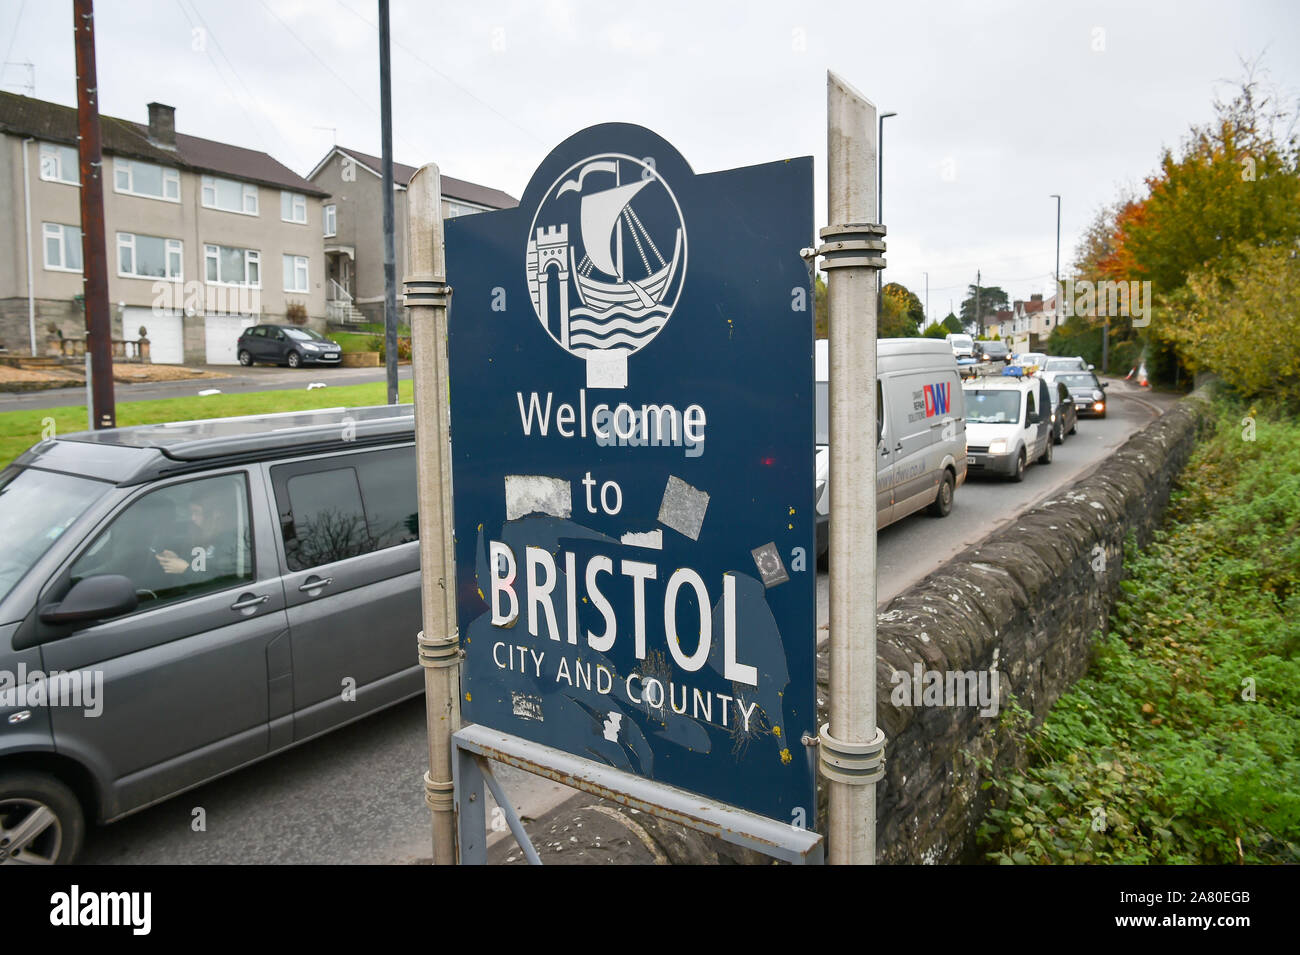 Der Verkehr verlässt und gelangt nach Bristol, die nach einer Abstimmung des ratskabinetts, das auf einer Tagung am 5. November um die Annahme des Vorschlags für eine saubere Luftverkehrszone gebeten wird, die erste Stadt Großbritanniens sein könnte, die ein Verbot von Dieselfahrzeugen zur Verbesserung der Luftqualität einführt. PA-Foto. Bilddatum: Dienstag, 5. November 2019. Die Fahrzeuge werden vom Betreten eines zentralen Bereichs der Stadt zwischen 7 und 15 Uhr jeden Tag im Rahmen von Vorschlägen des Bristol City Council verboten. Eine breitere Gebührenzone für Nutzfahrzeuge wie Busse, Taxis, Lieferwagen und Lastwagen, die bestimmte Emissionsnormen nicht erfüllen, ist Teil von Stockfoto